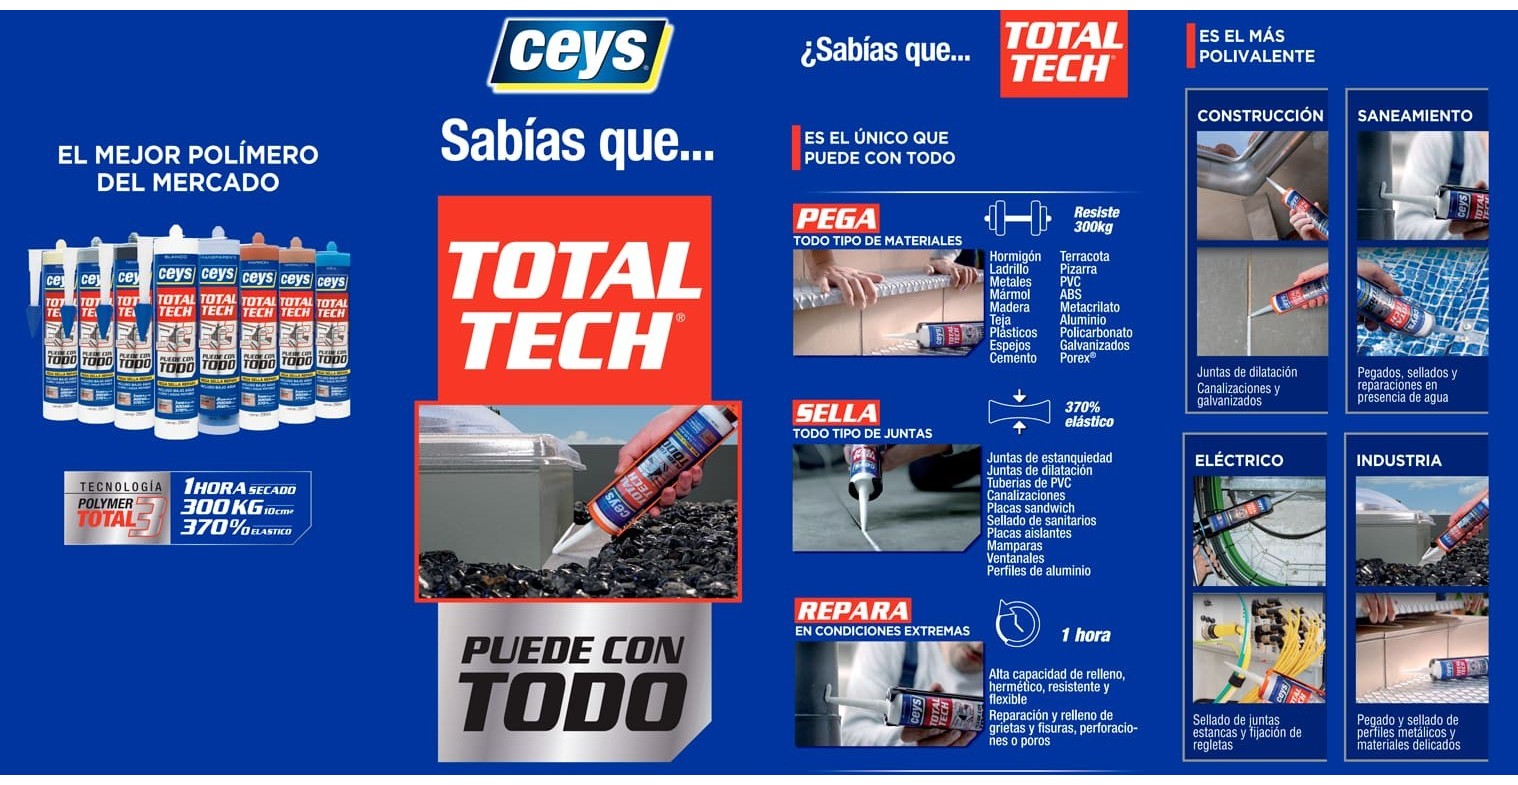 Total Tech de Ceys: un adhesivo sellador para todo tipo de